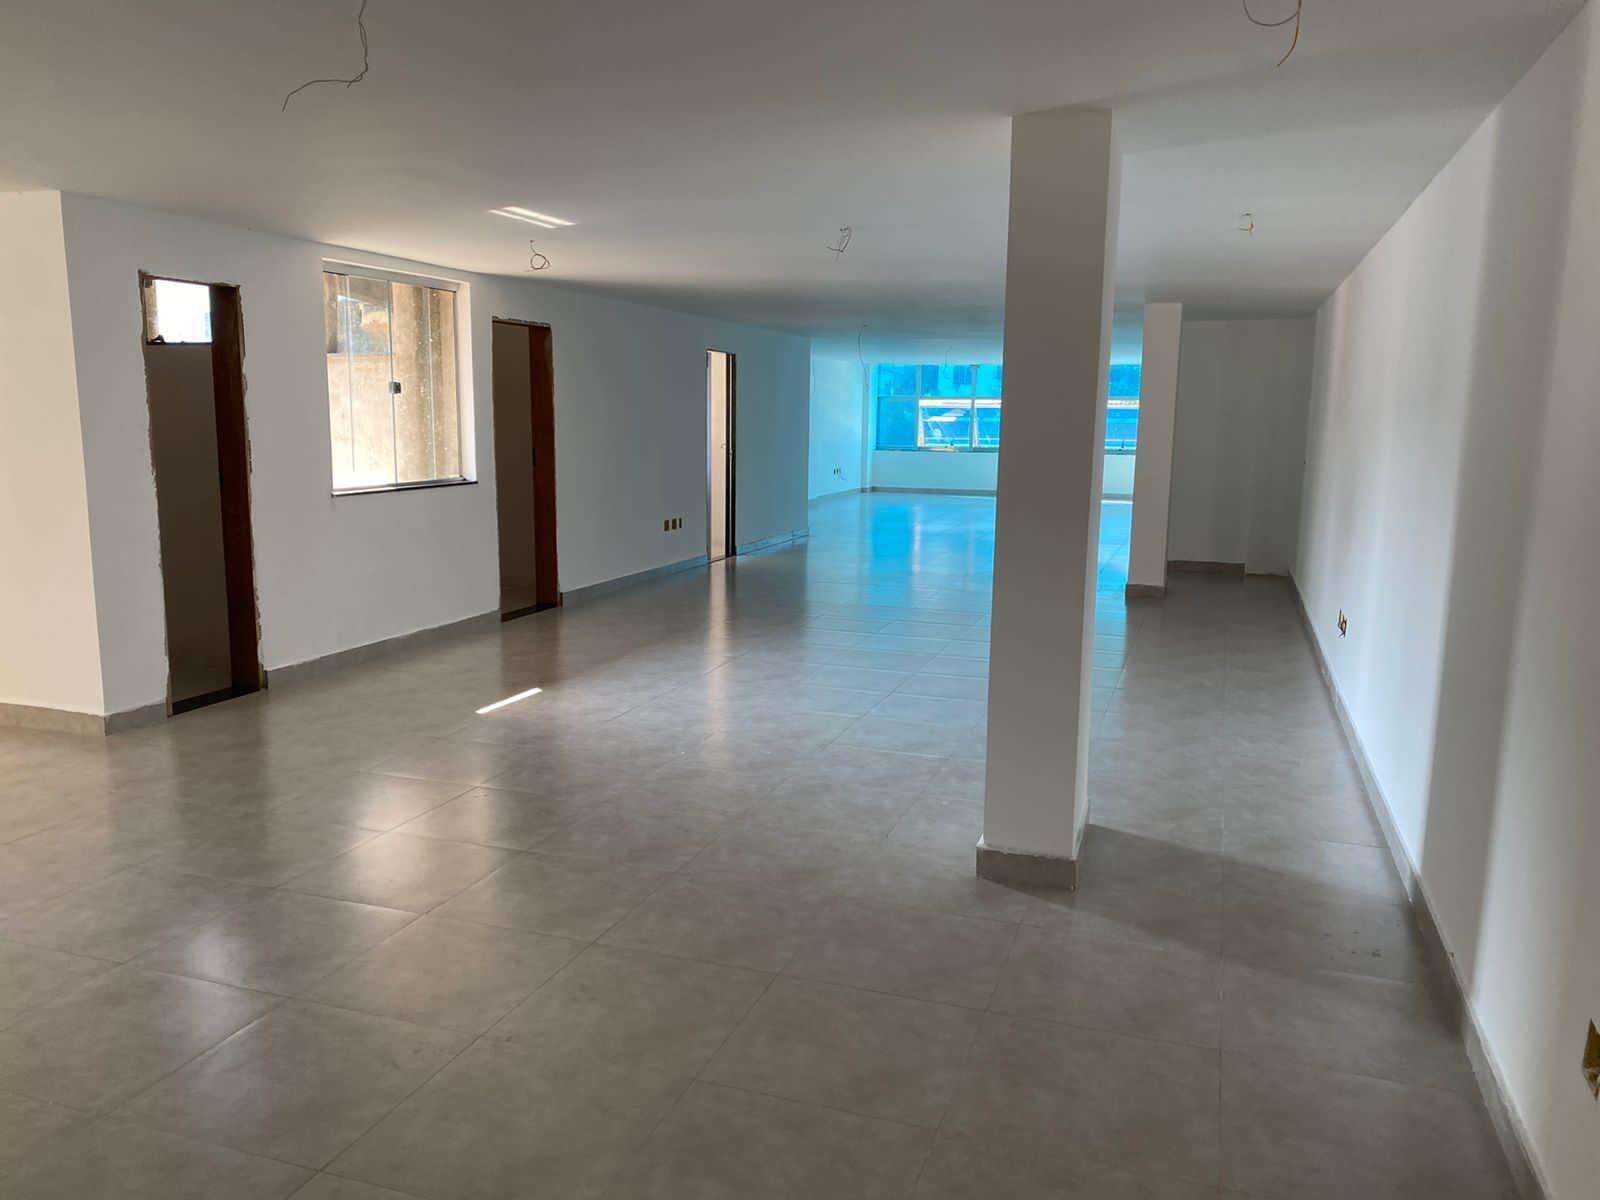 Sala para aluguel no Centro: 8bc7055d-f-whatsapp-image-2021-09-29-at-15.52.08-1.jpeg